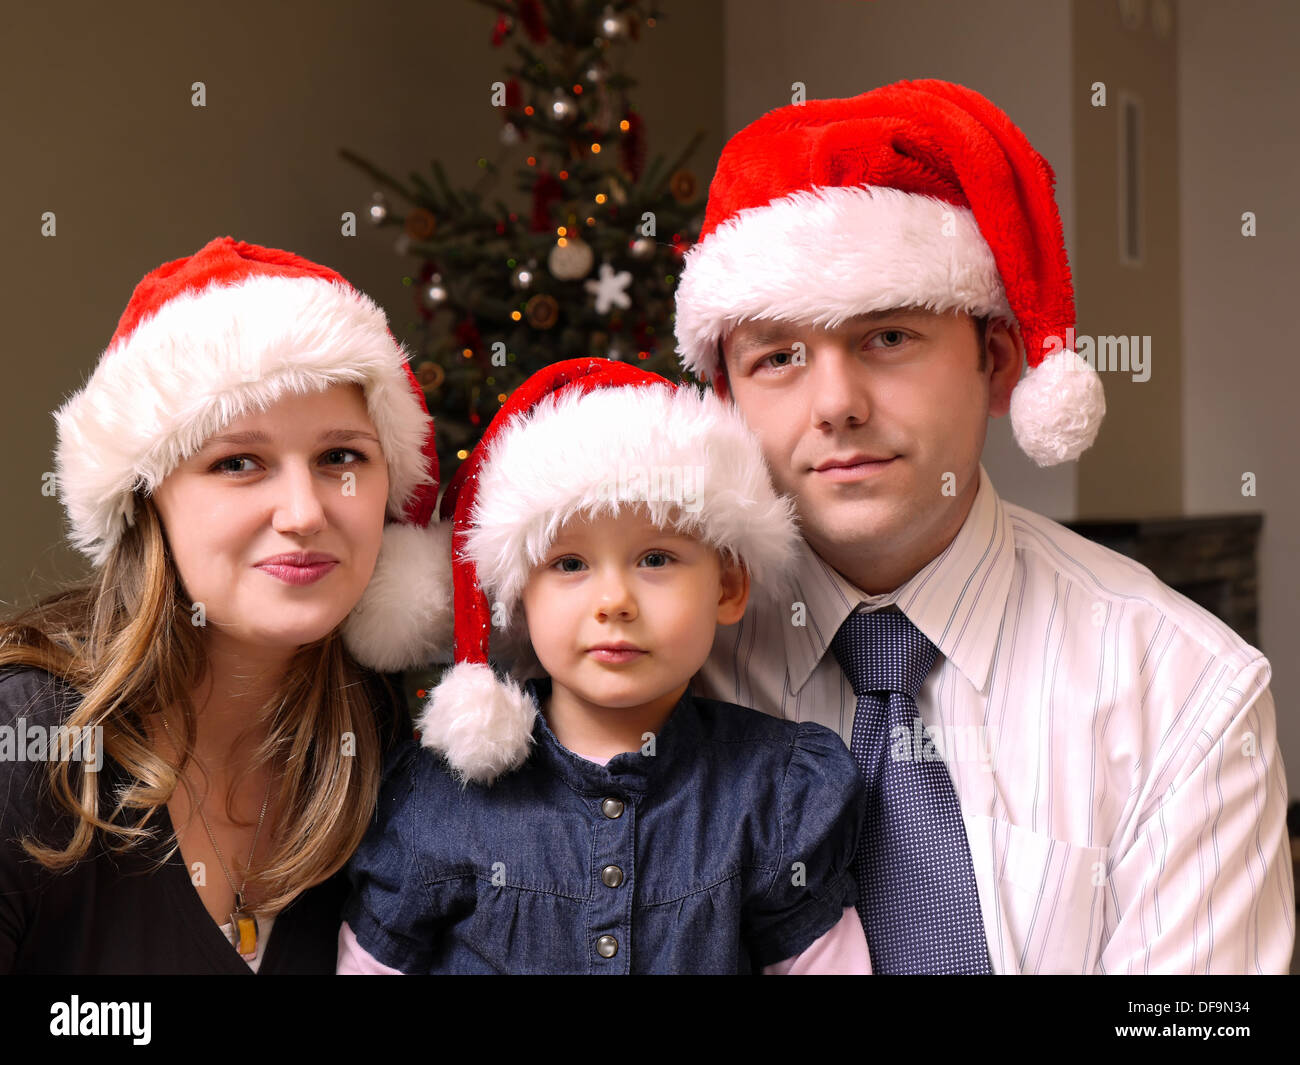 Portrait de maman, papa et leur jolie petite fille qui portaient tous des chapeaux de Père Noël avec arbre de Noël dans l'arrière-plan Banque D'Images